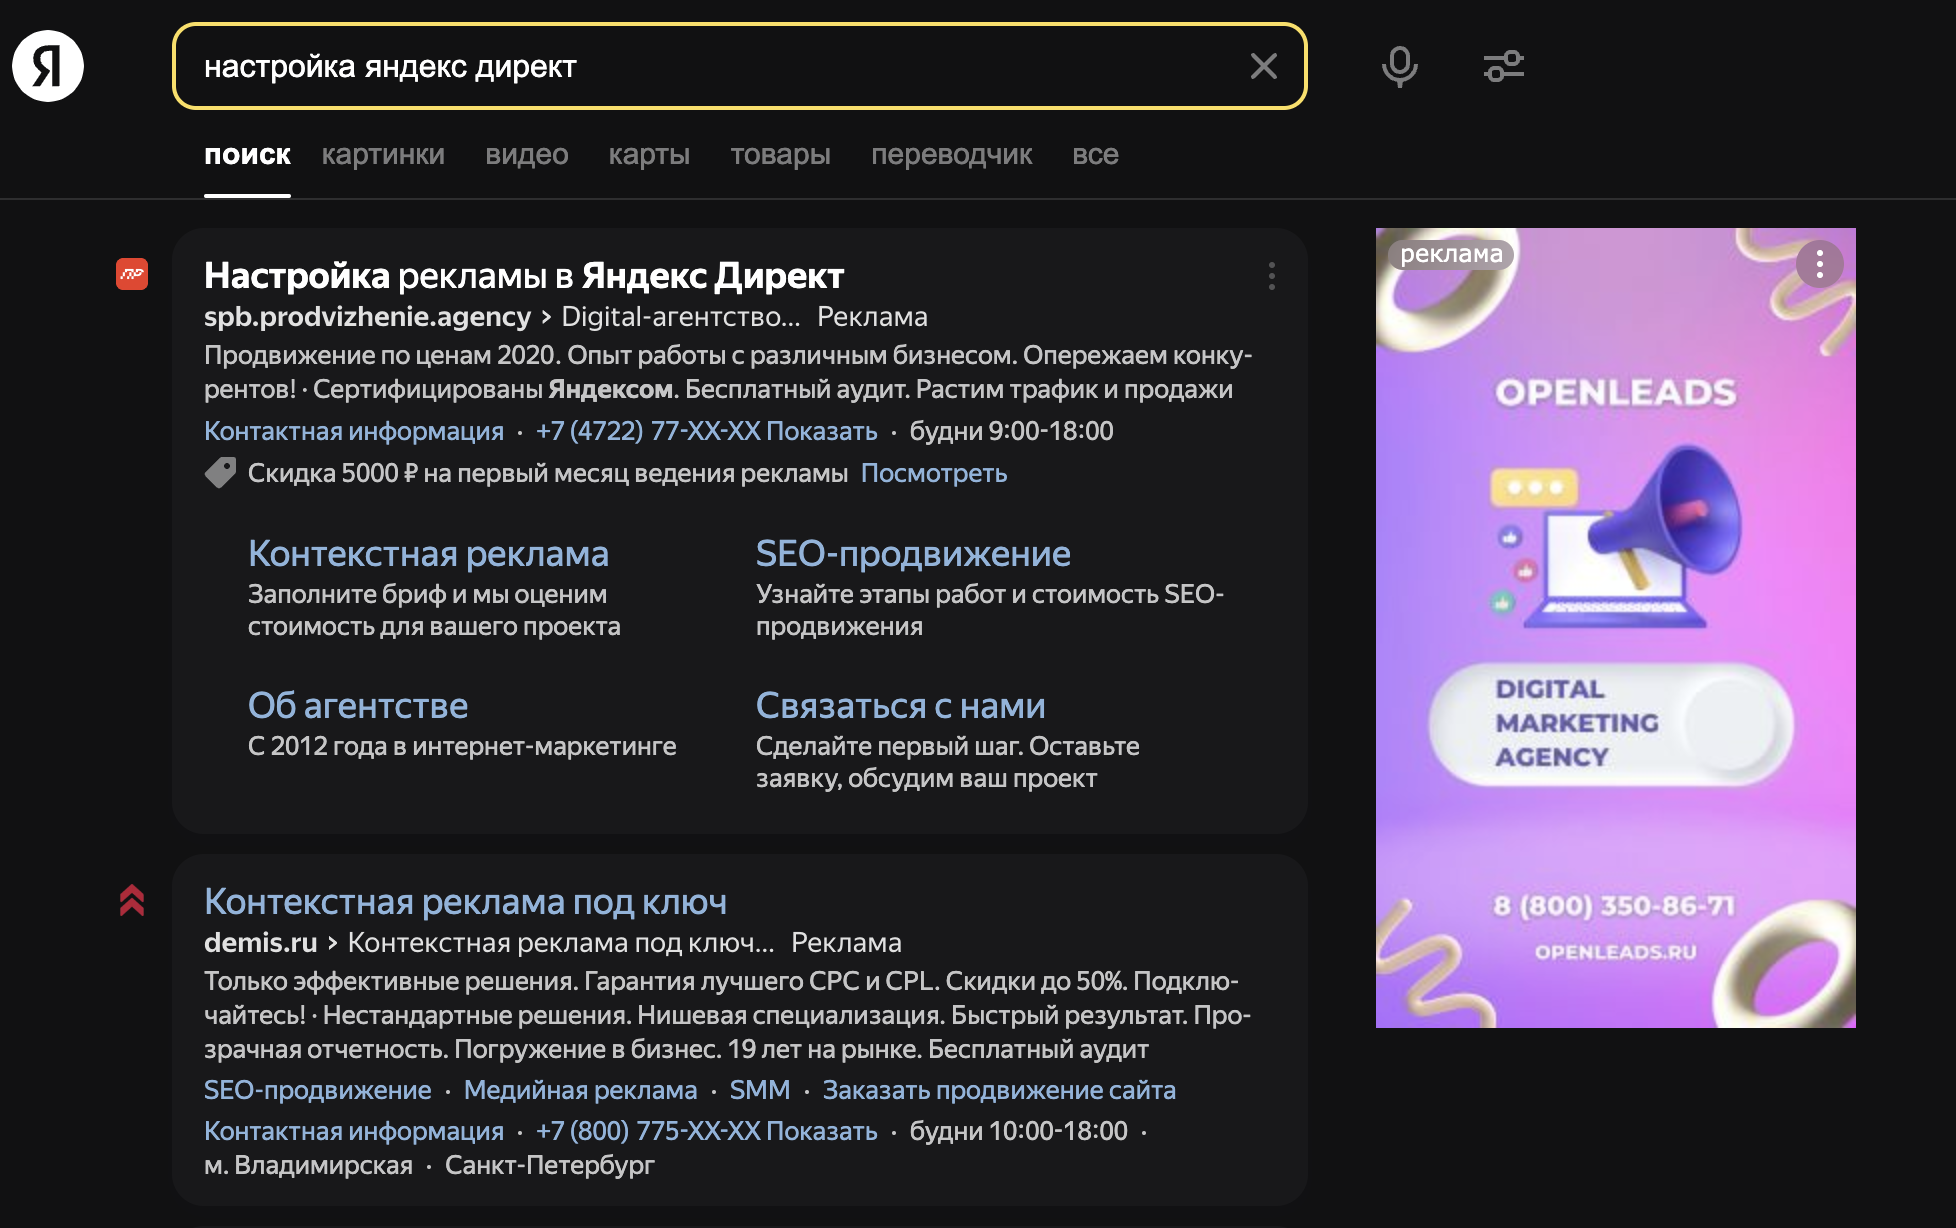 Пример рекламной поисковой выдачи в Яндексе, включая поисковый баннер